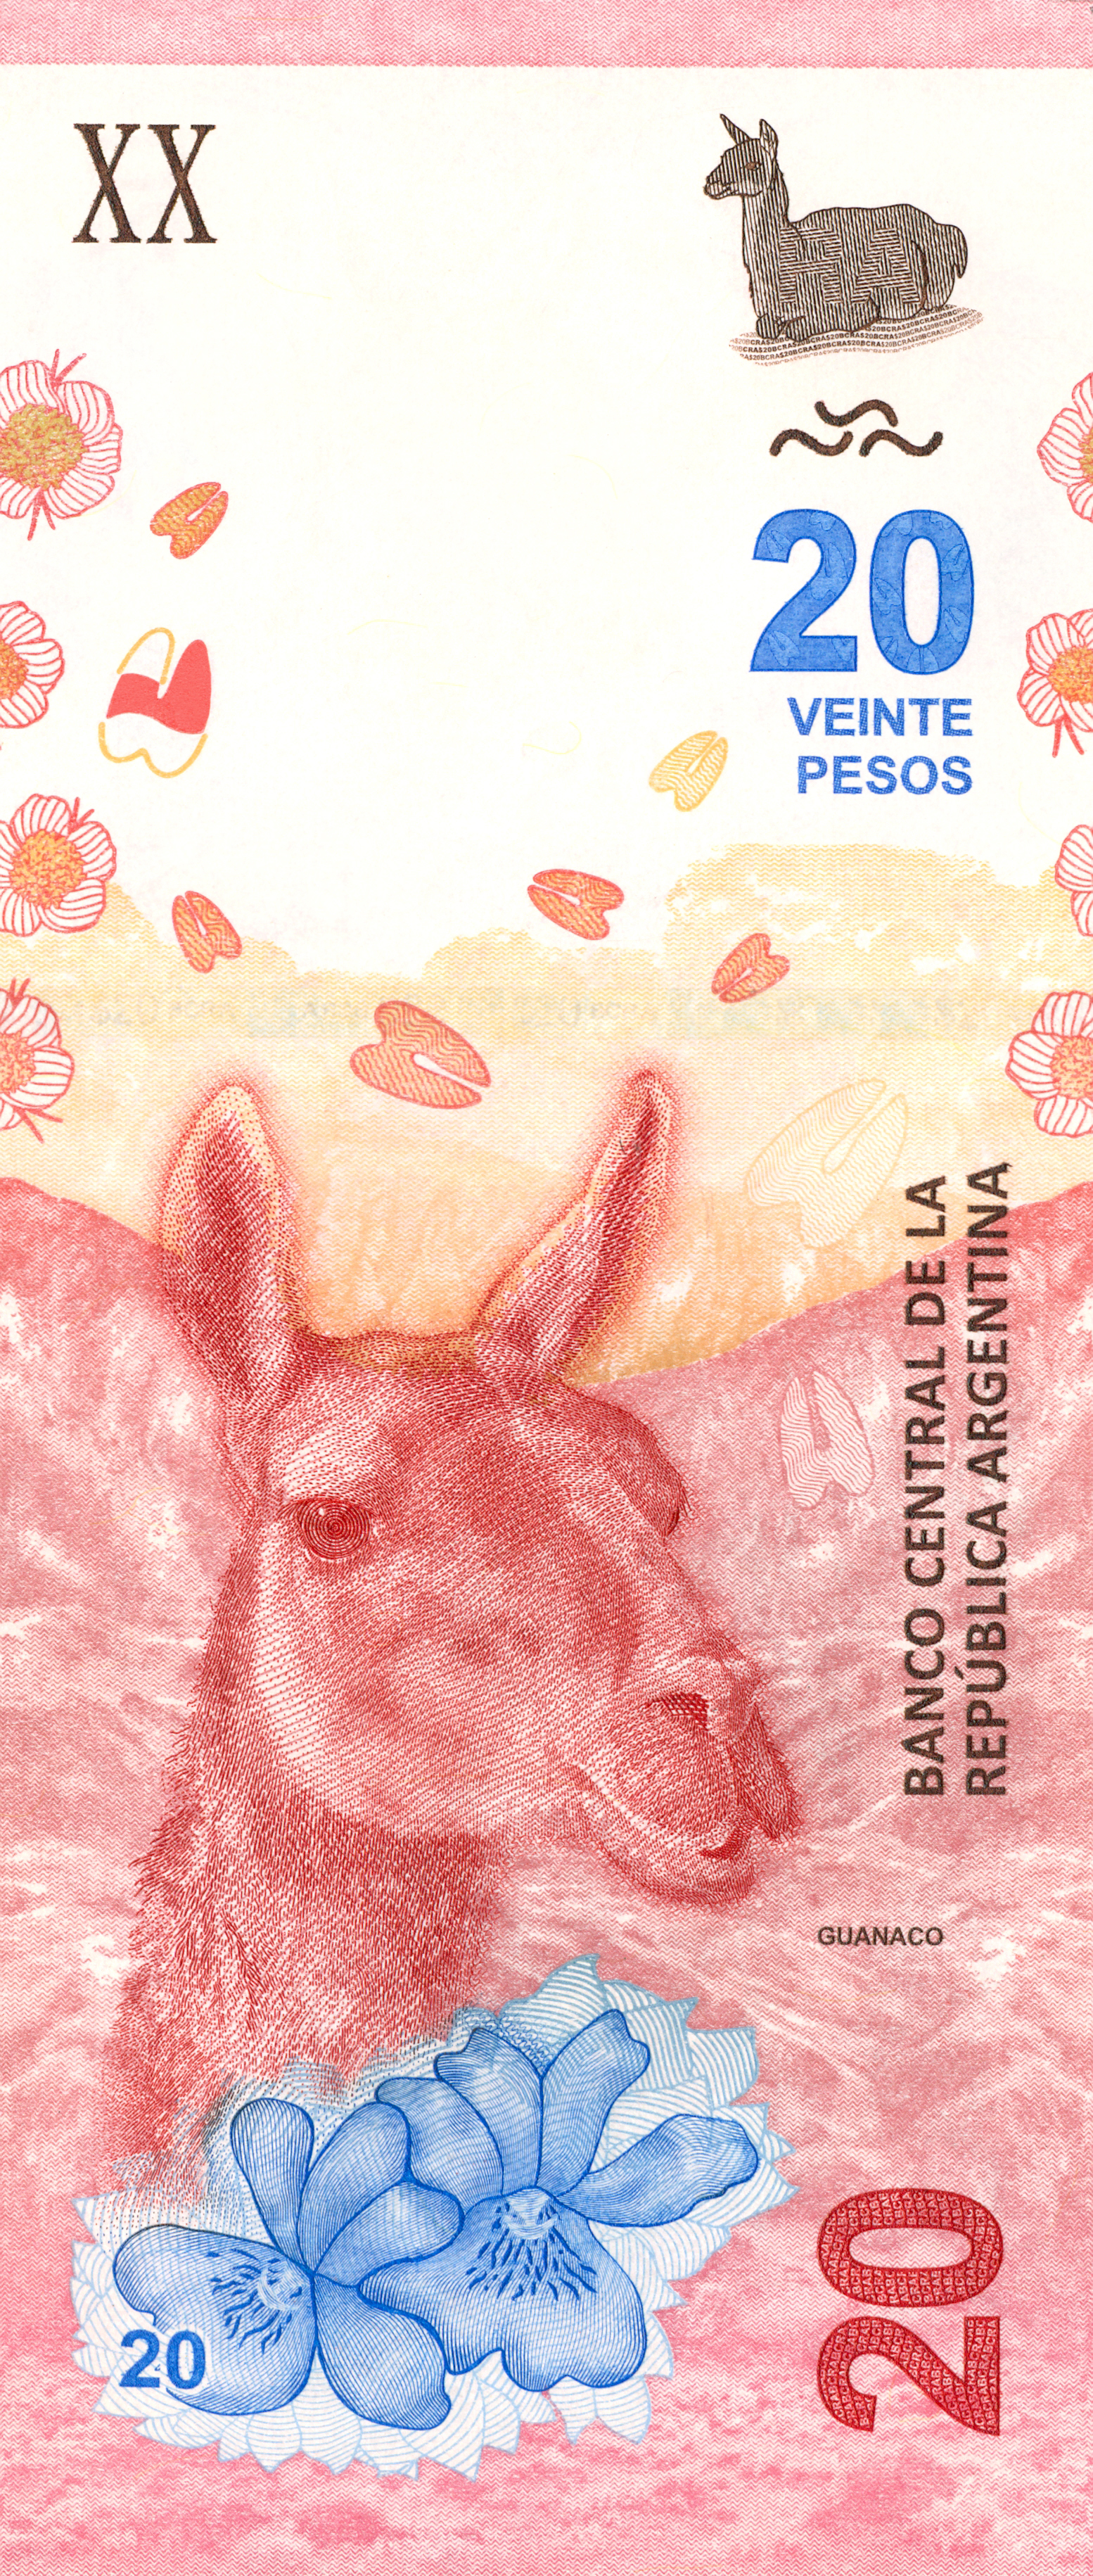 imagen en miniatura del billete de 20 pesos